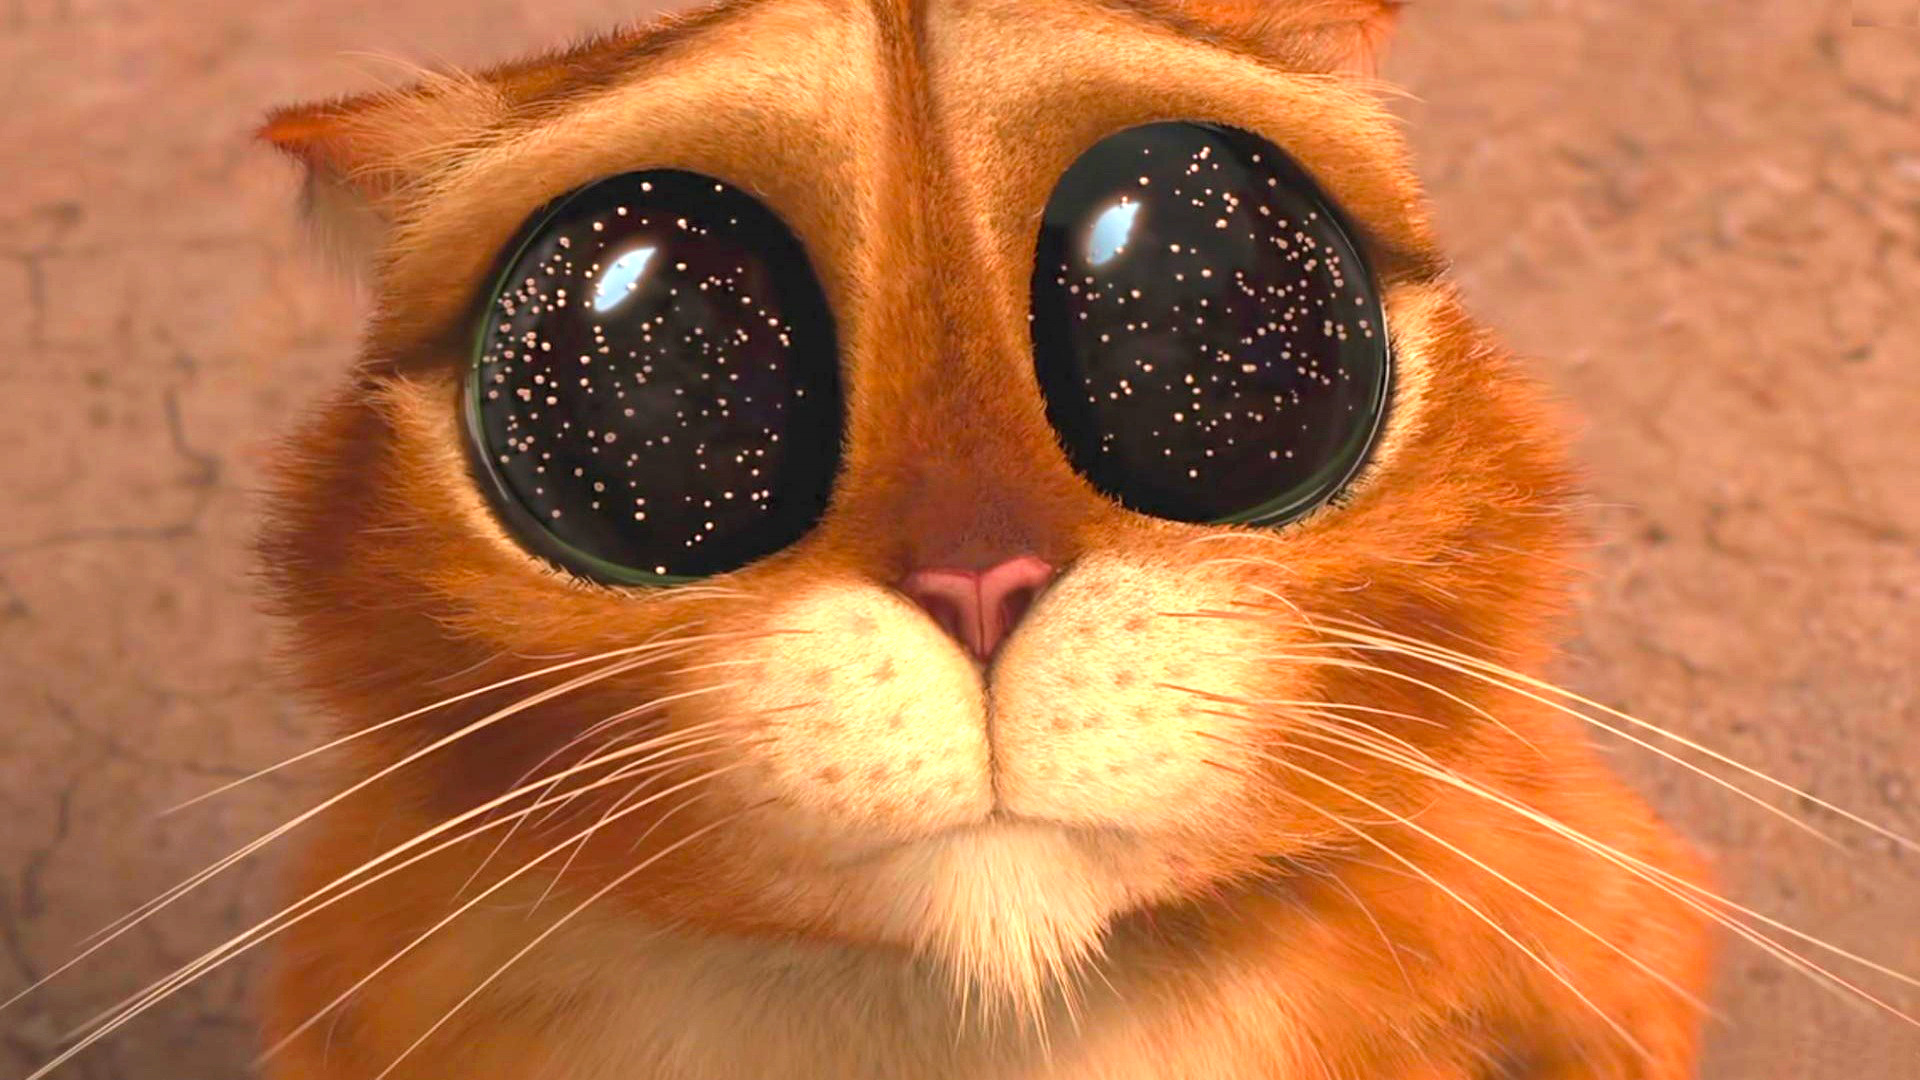 Извините пожалуйста сказал. Кот из Шрека. Милые глазки. Глазки кота из Шрека. Кот в сапогах глаза космос.